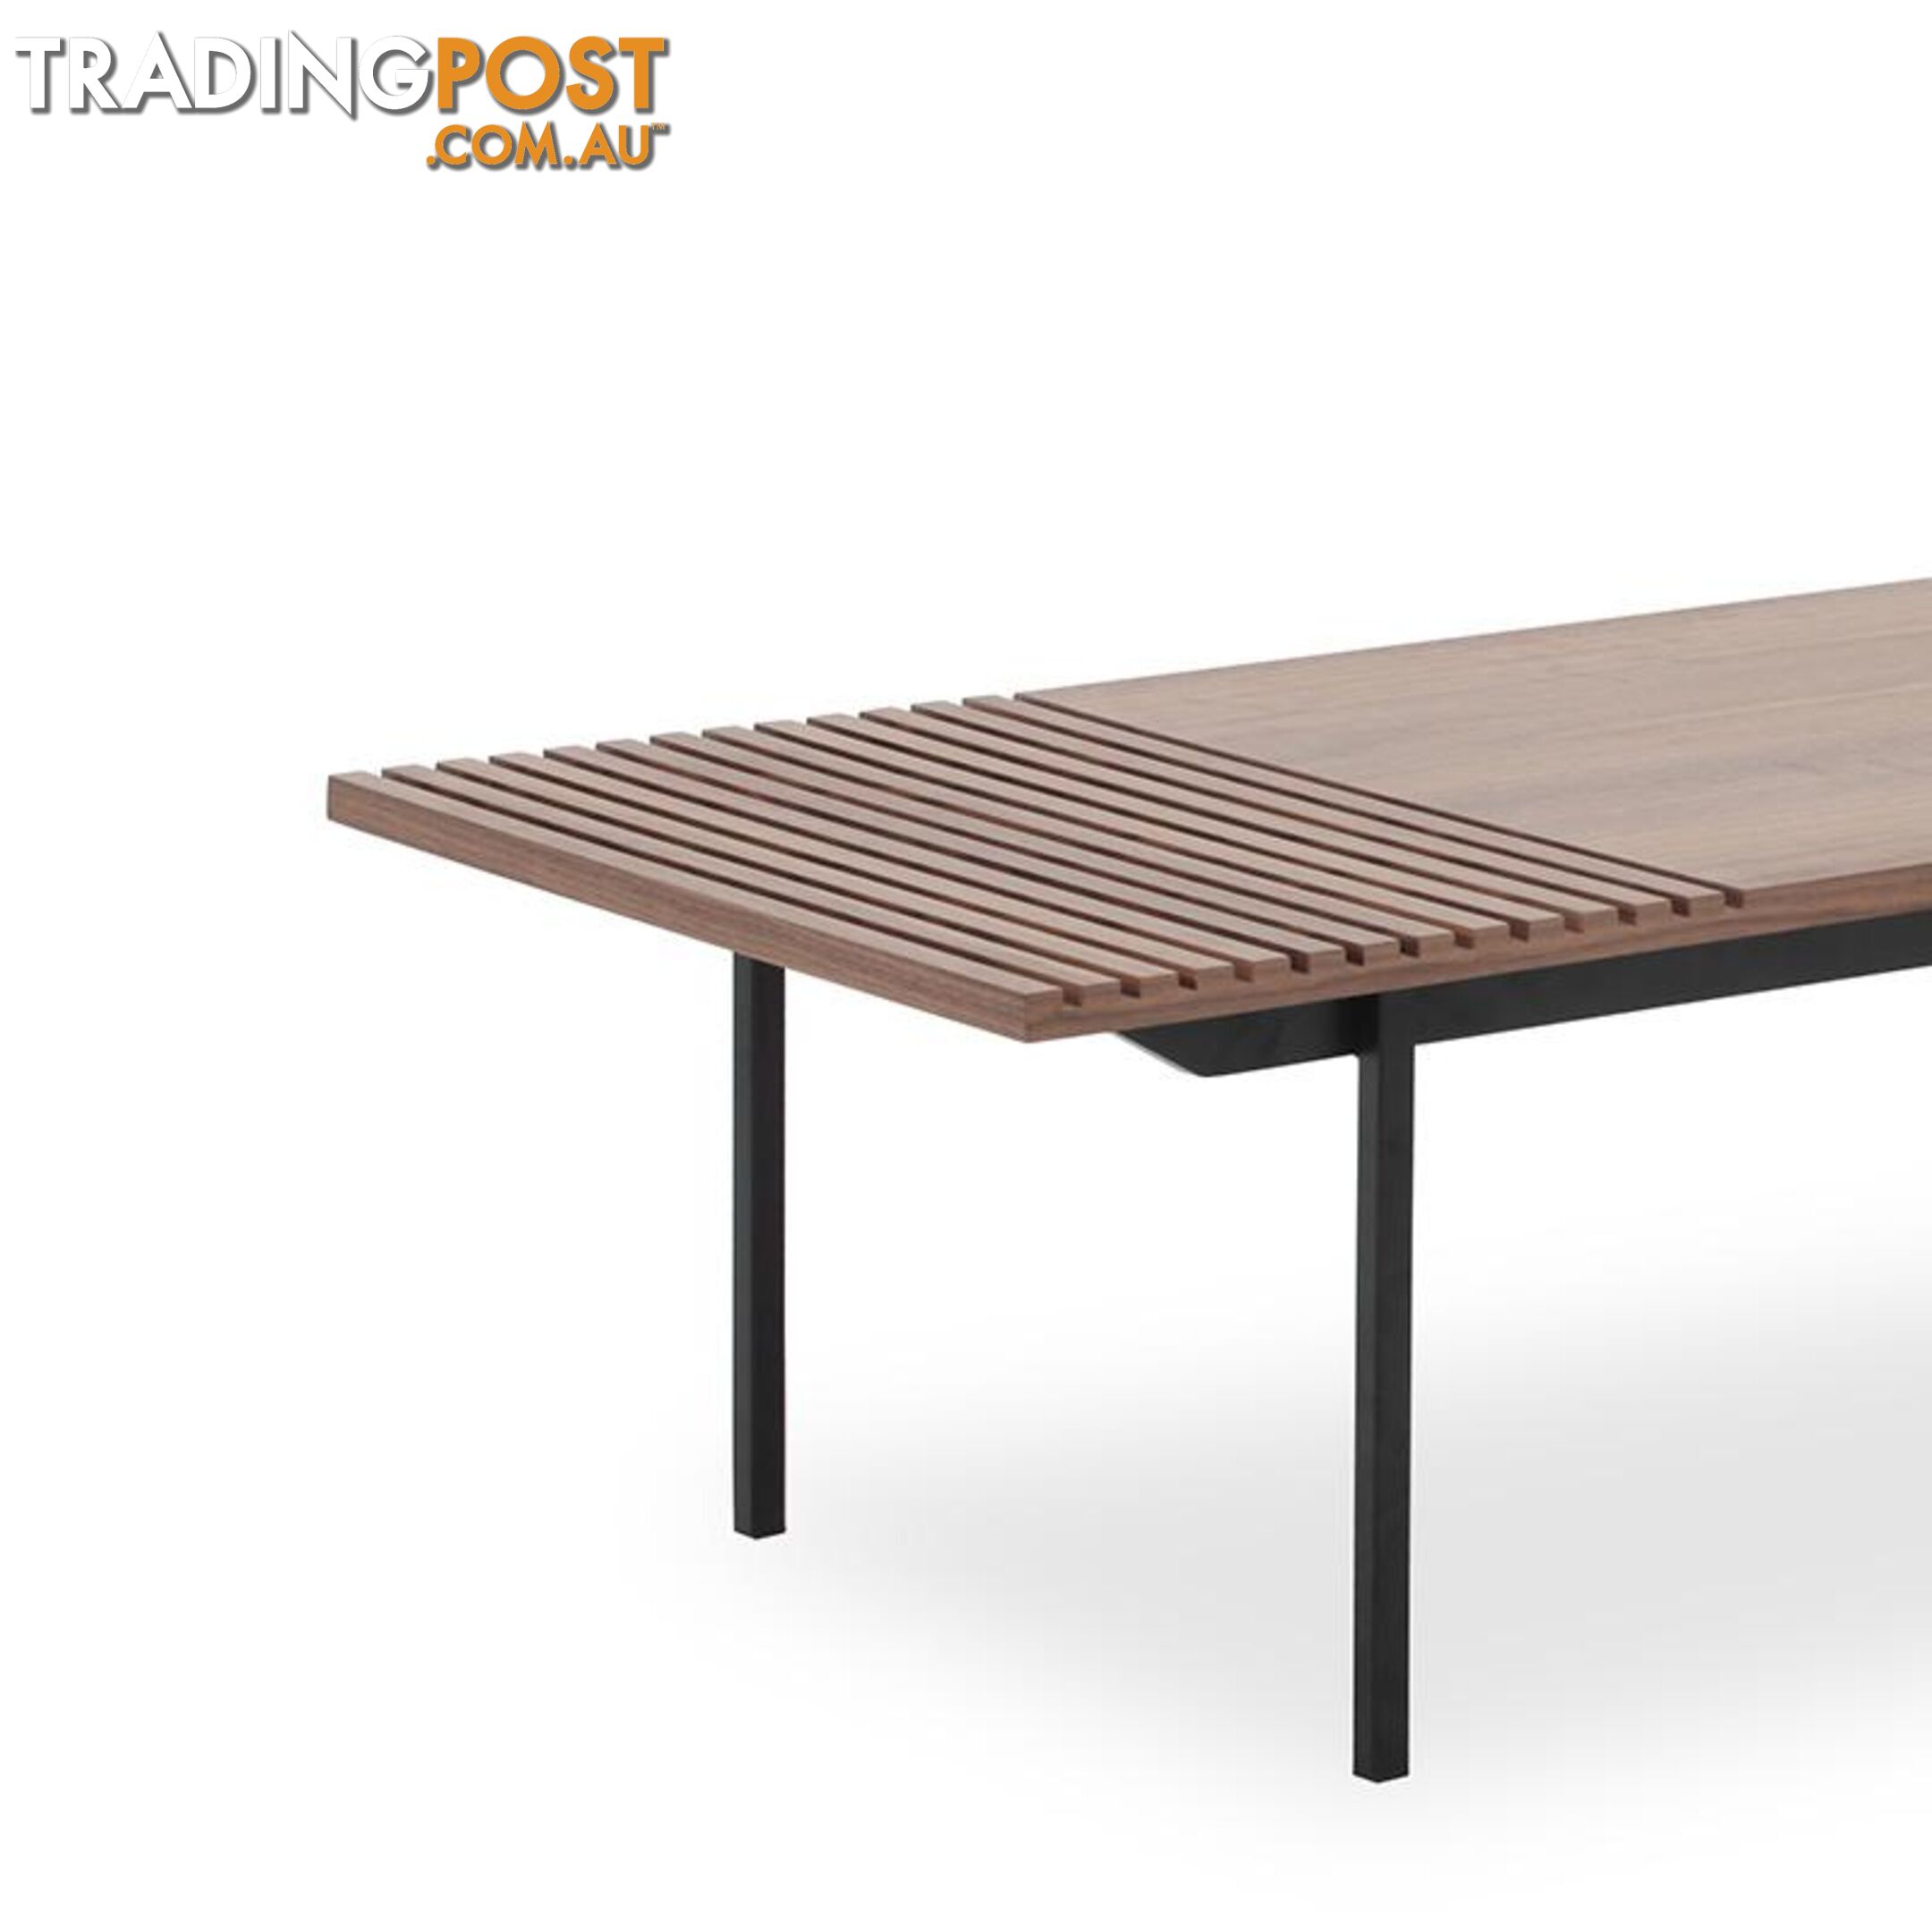 TOZZI Nest of Tables - Walnut & Black - DI-J5810A-B - 9334719001869